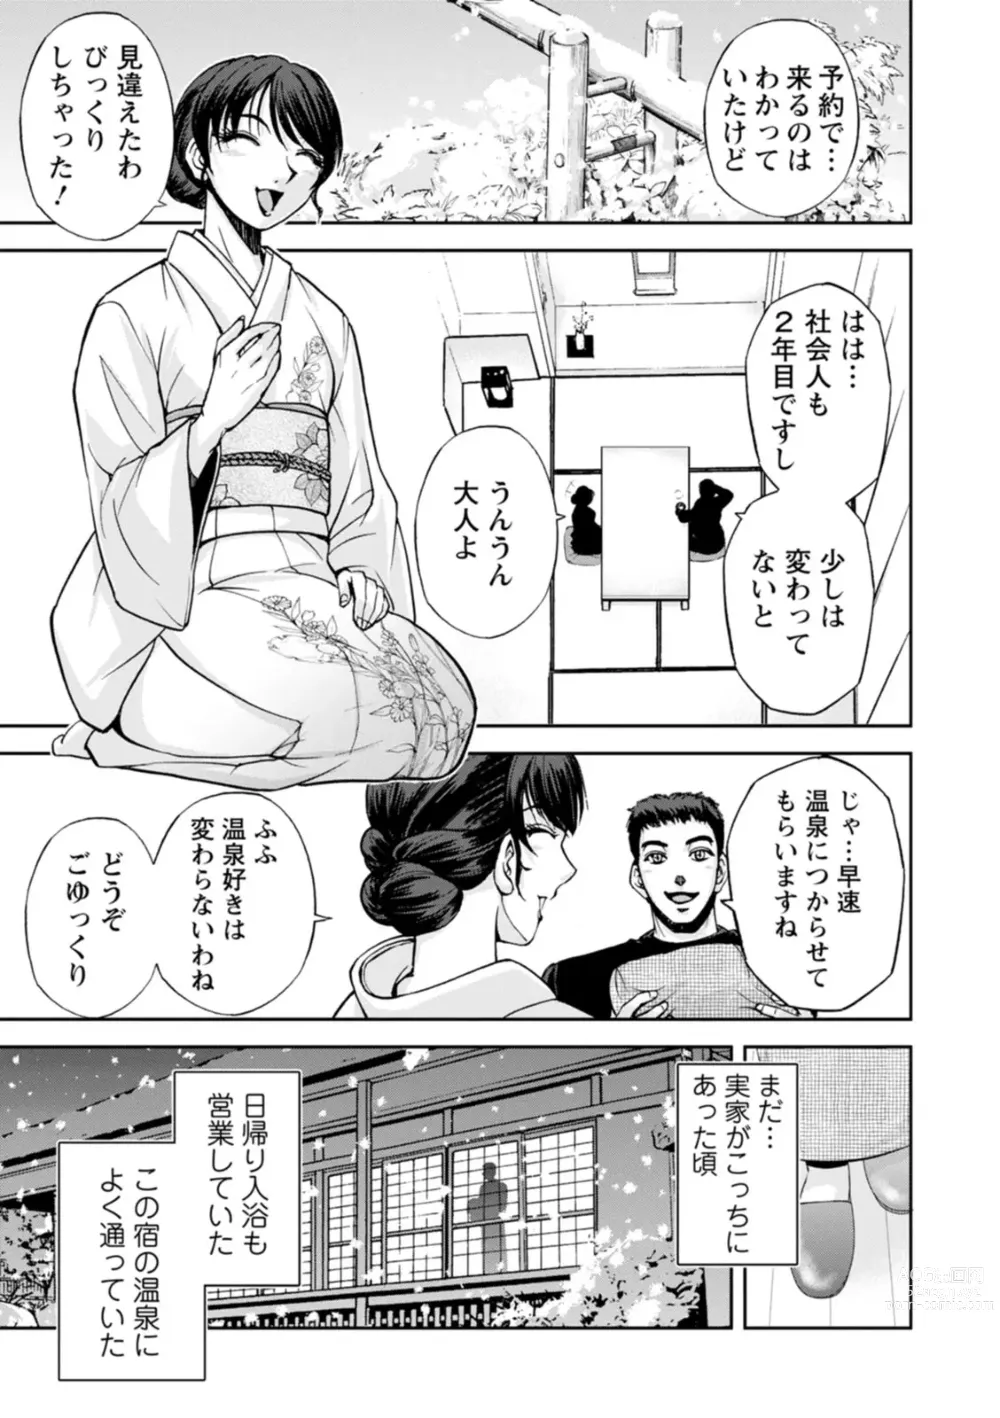 Page 9 of manga Okami no Touko-san - Miss. Touko, a Landlady of a Hot spring inn